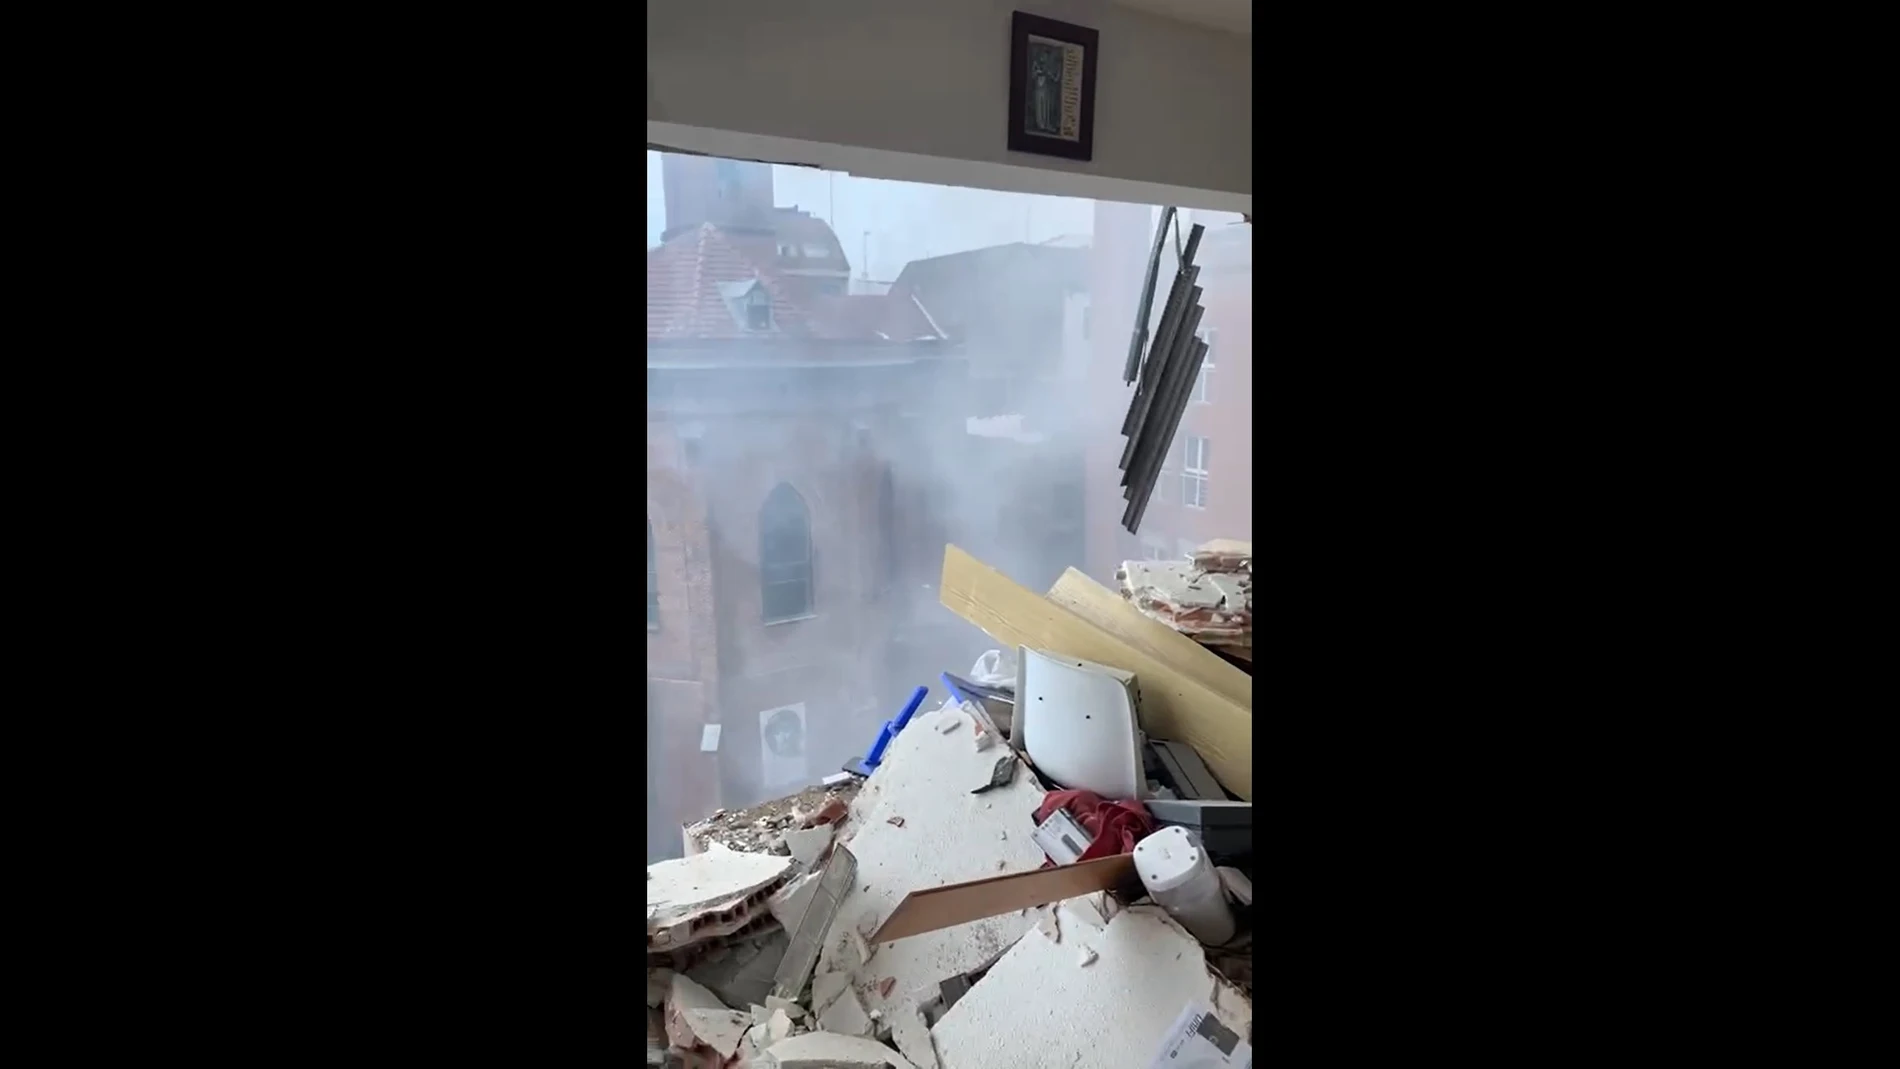 Imágenes desde el interior de la vivienda instantes después de la explosión